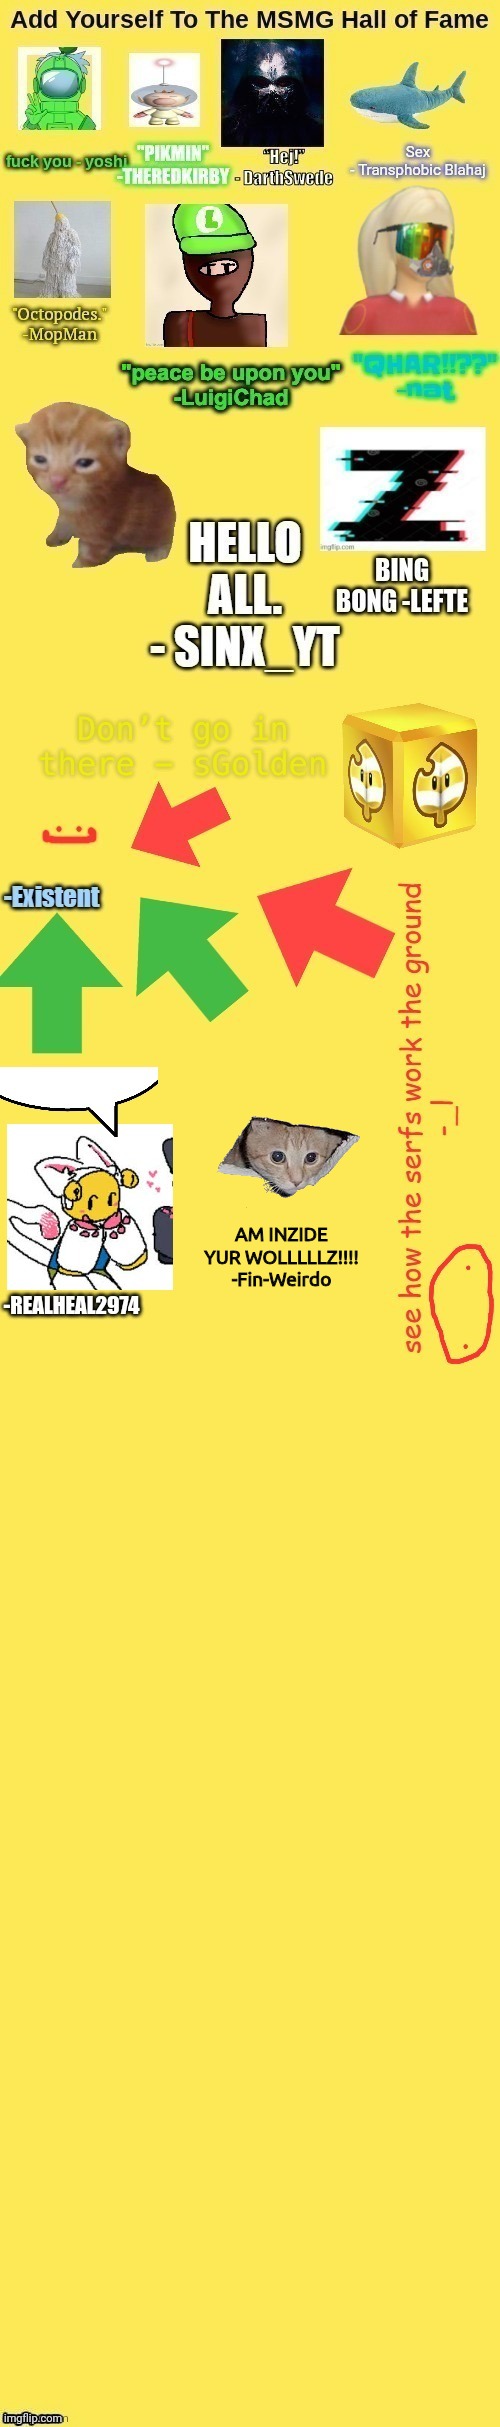 AM INZIDE YUR WOLLLLLZ!!!!
-Fin-Weirdo | made w/ Imgflip meme maker